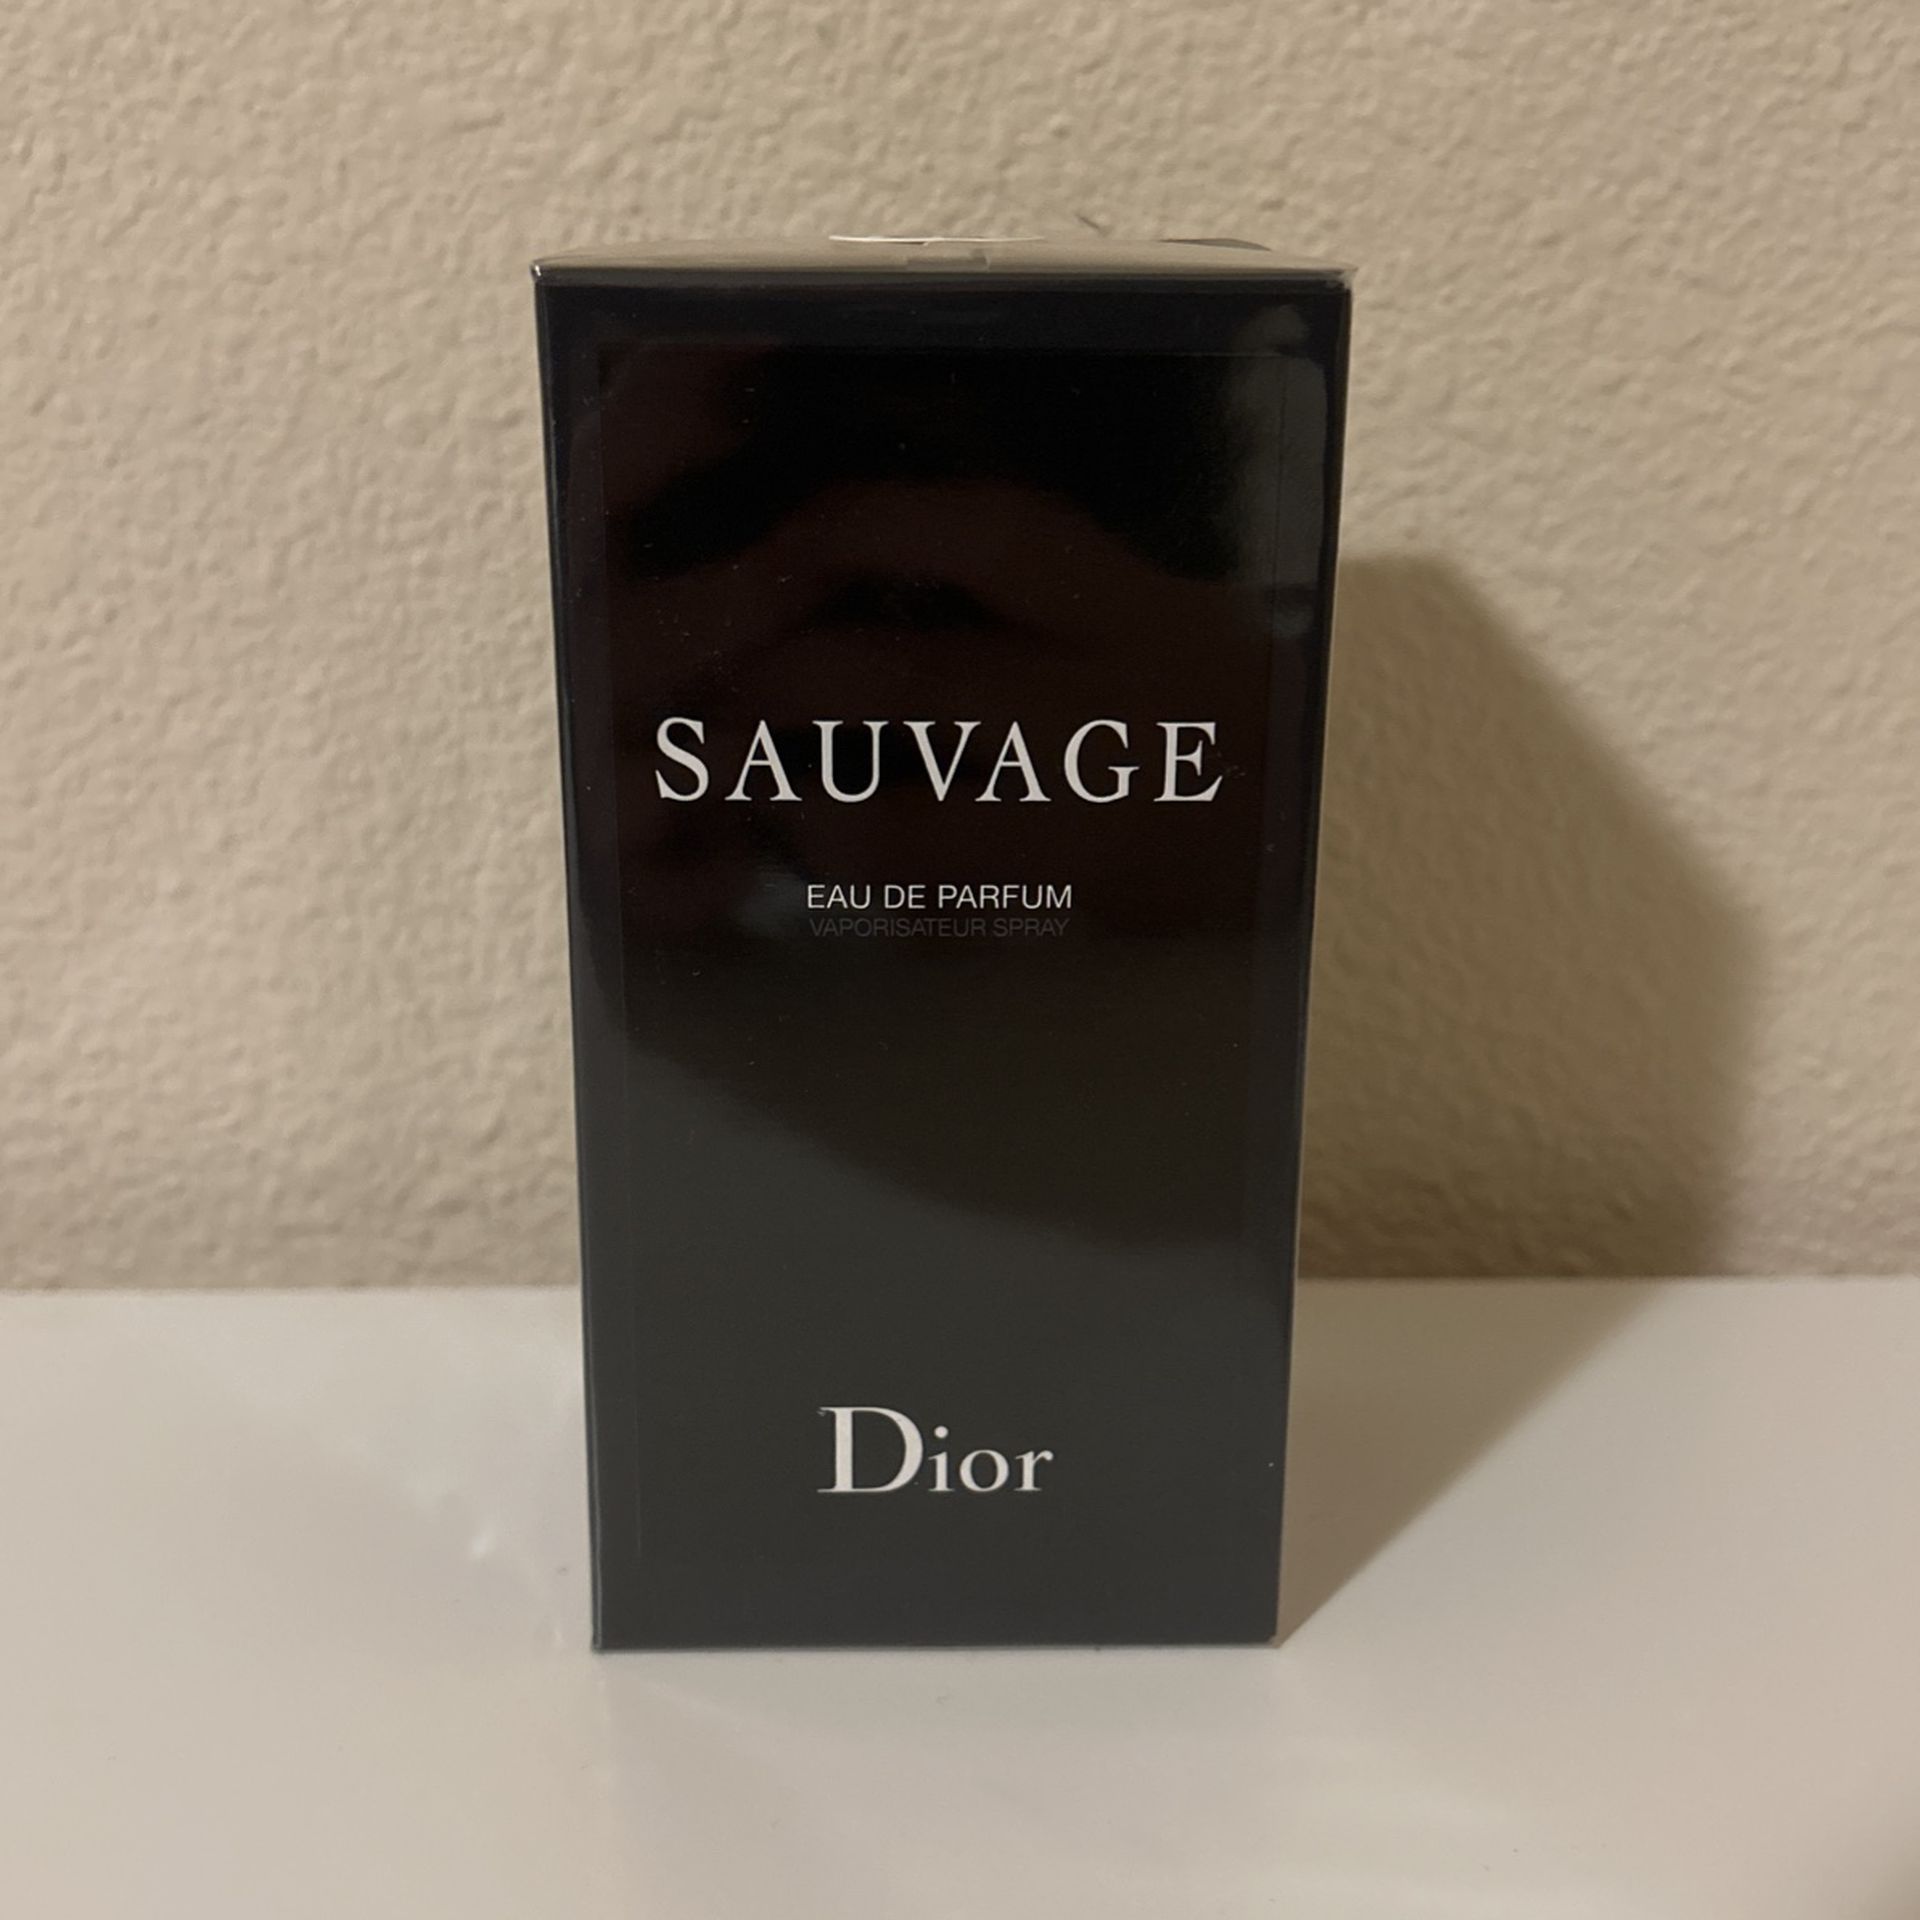 Sauvage Dior EAU DE PARFUM